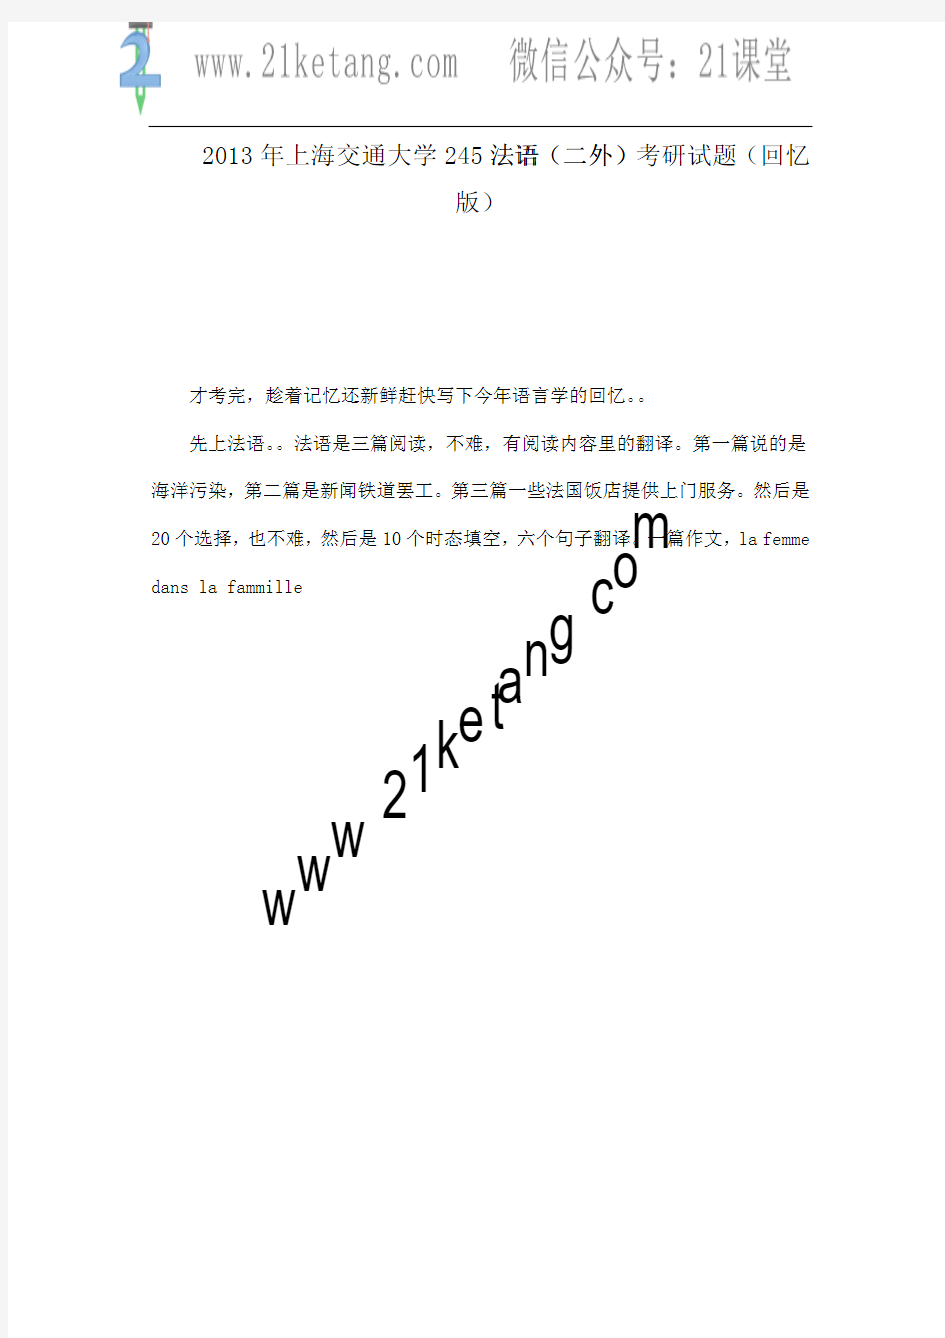 2013年上海交通大学245法语(二外)考研试题(回忆版)